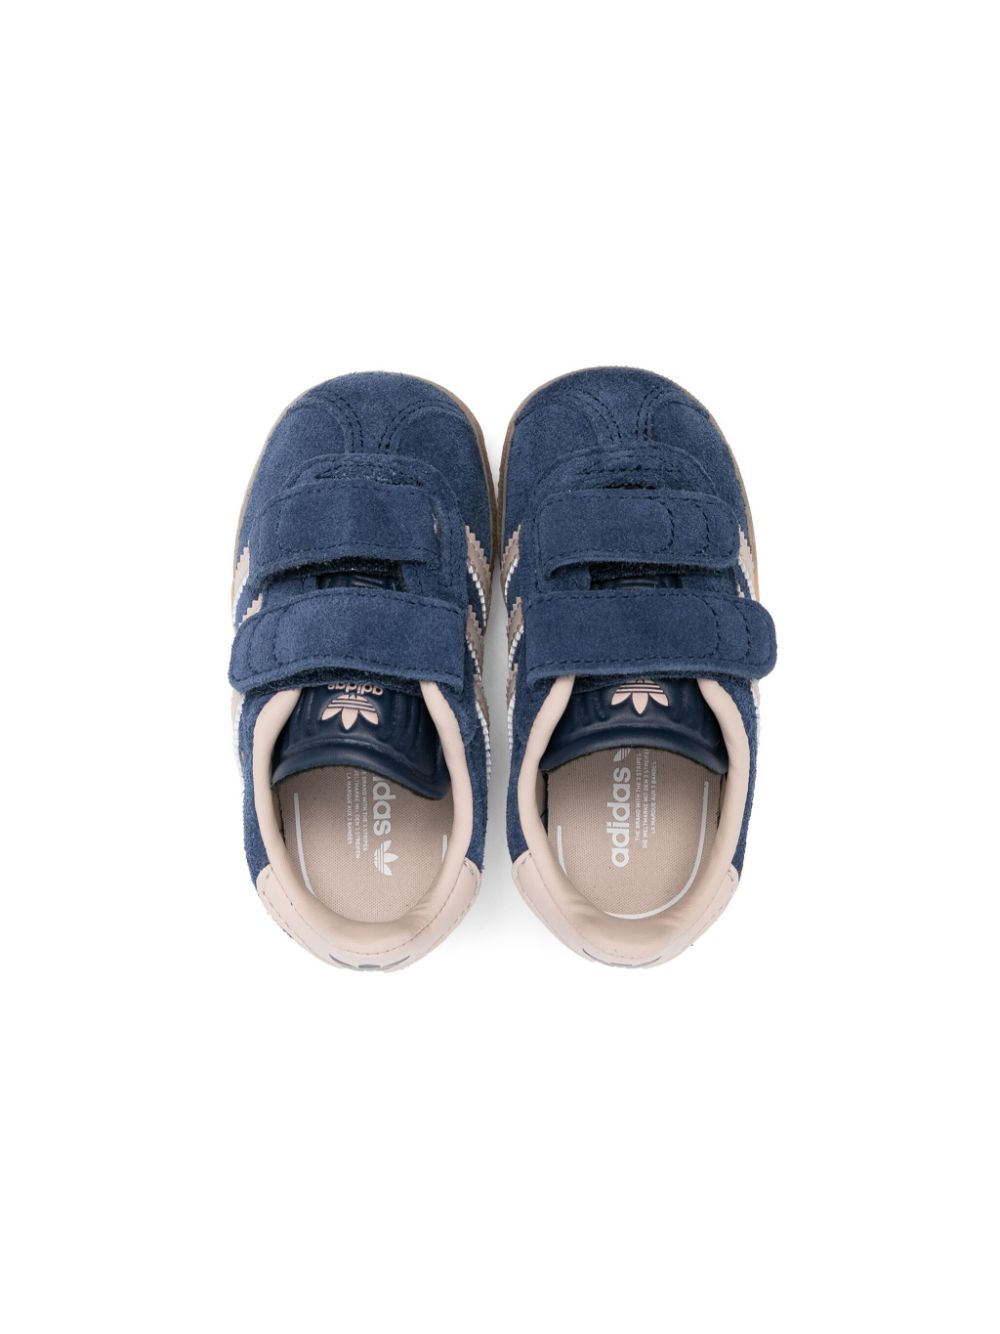 Shop Adidas Originals Gazelle Suede Sneakers In Blue